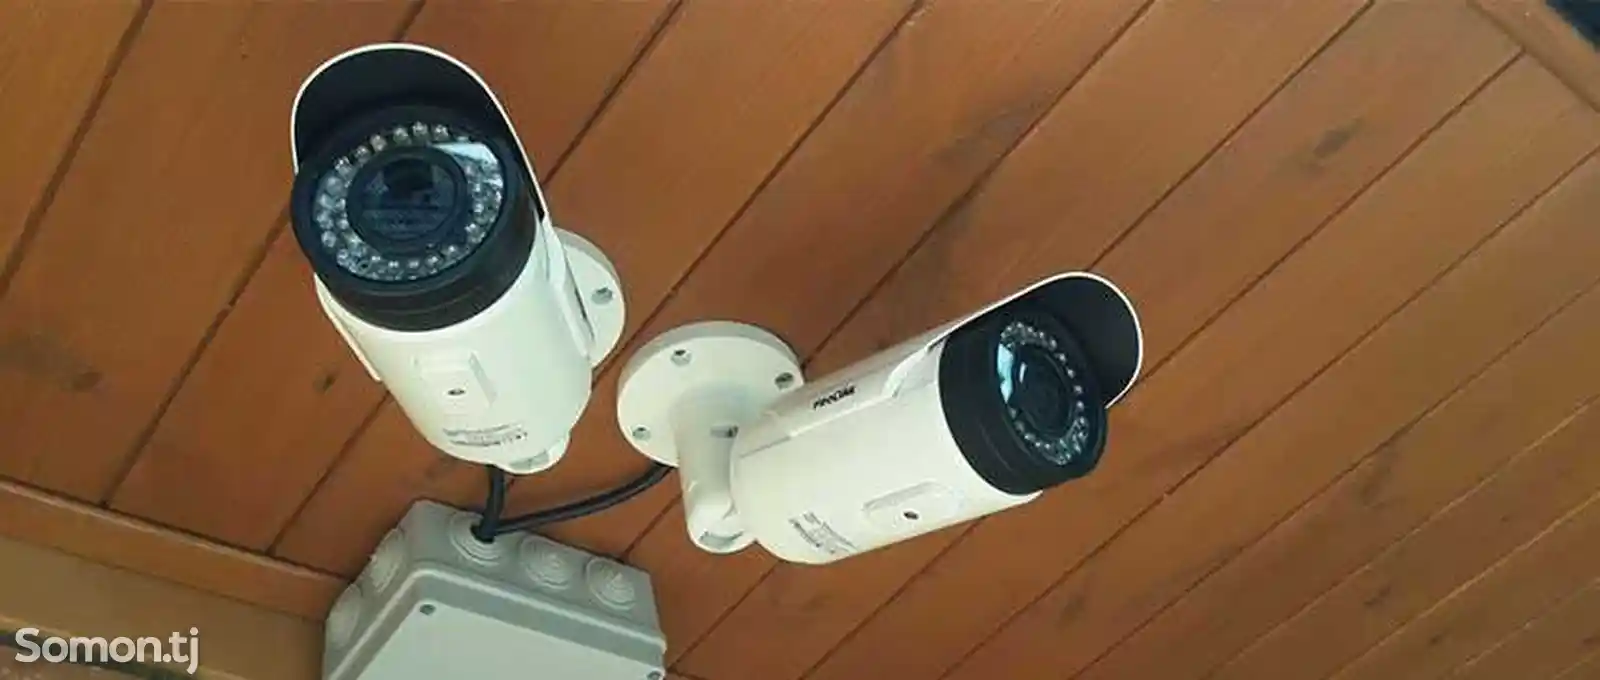 Услуга установки камер видеонаблюдения-3